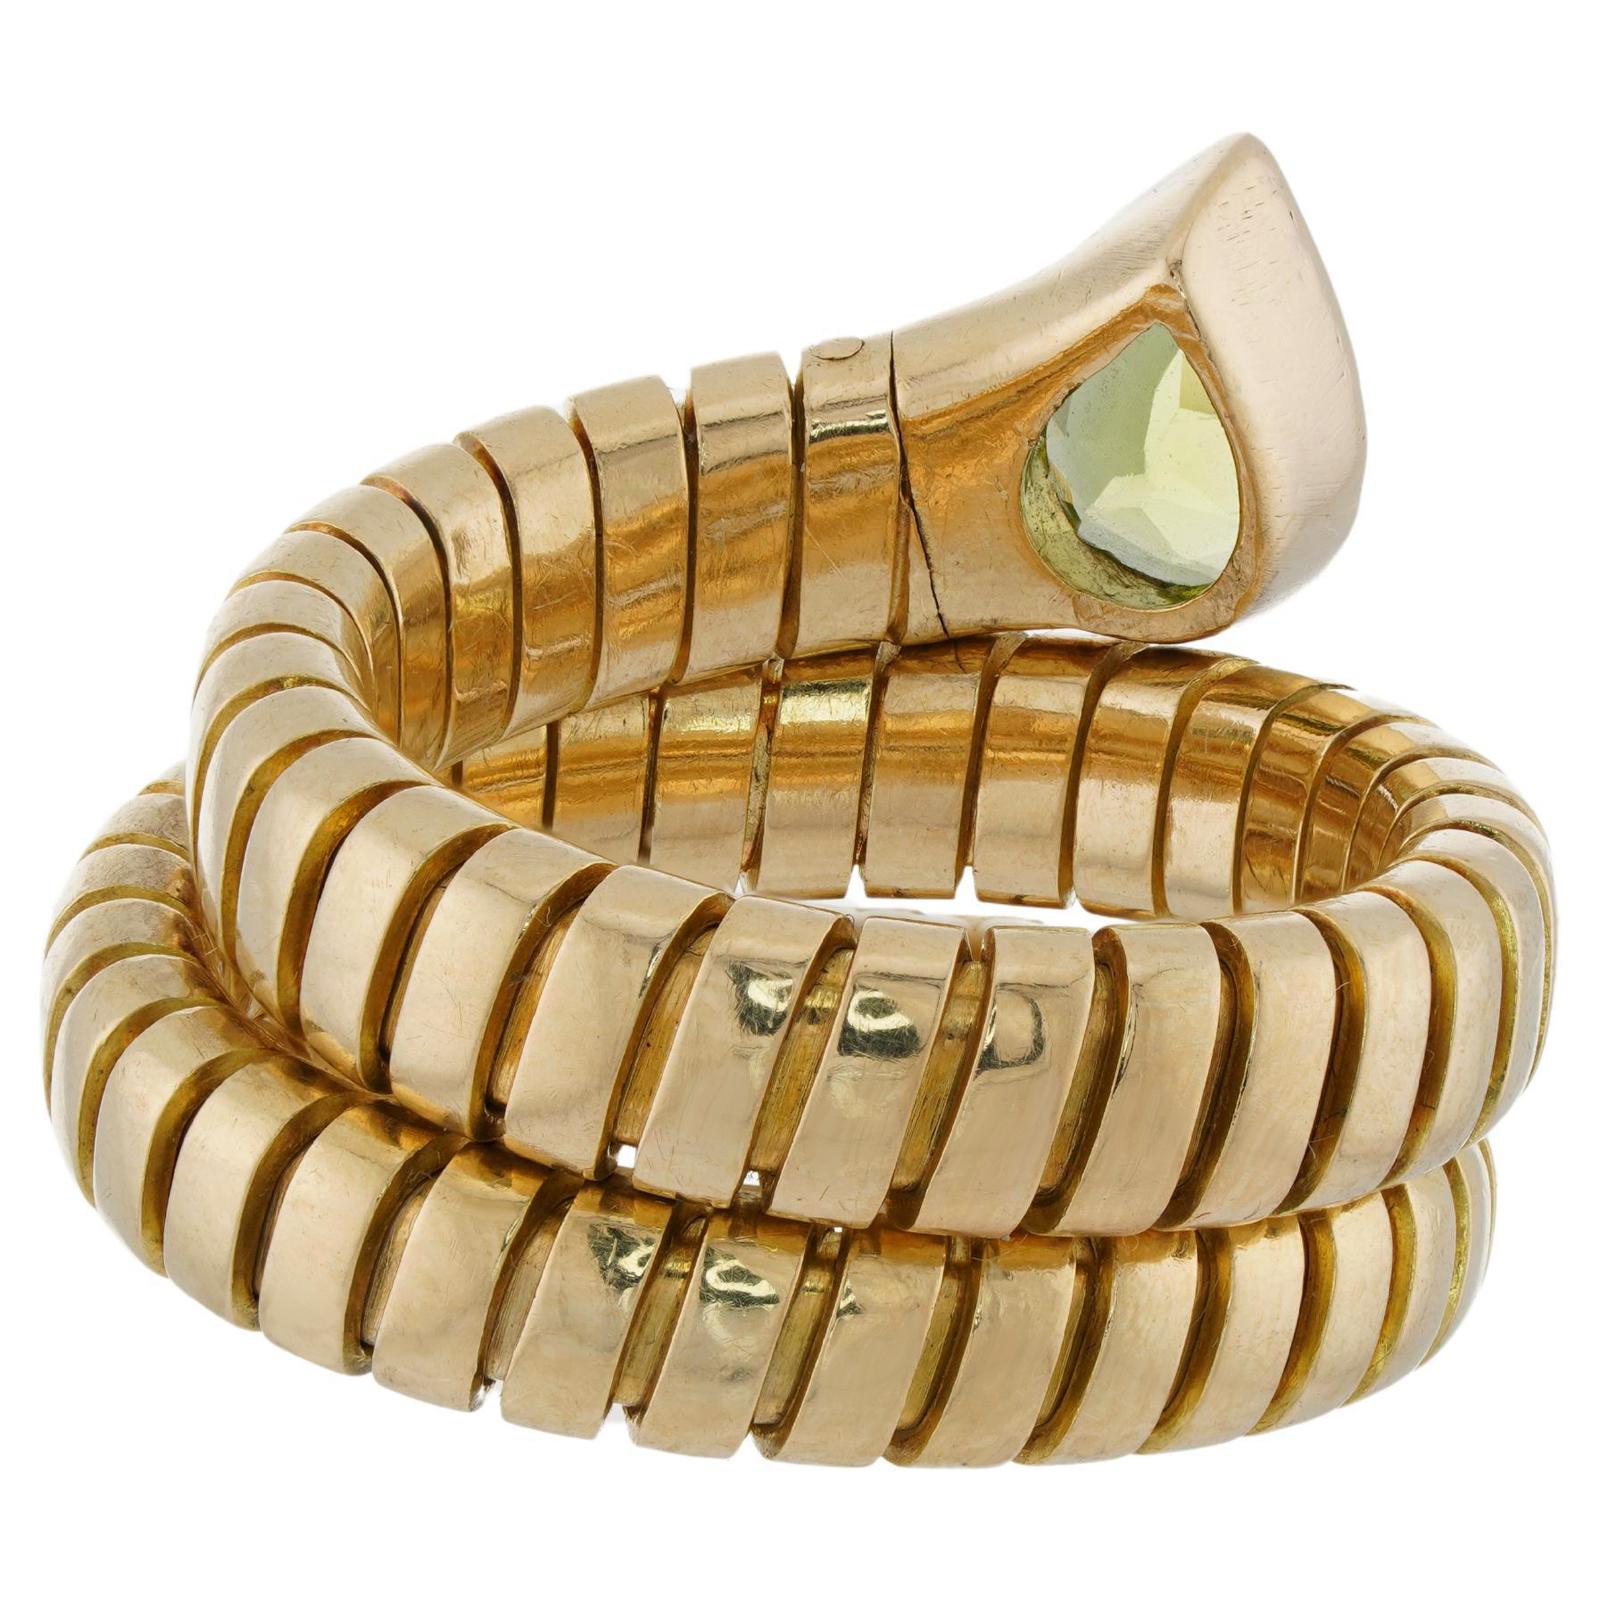 Dieser fabelhafte, authentische Bvlgari-Ring aus der klassischen Tubogas-Kollektion ist aus 18 Karat Gelbgold gefertigt und mit einem Peridot im Birnenschliff besetzt. Durch die flexible Umwicklung kann die Ringgröße leicht angepasst werden.